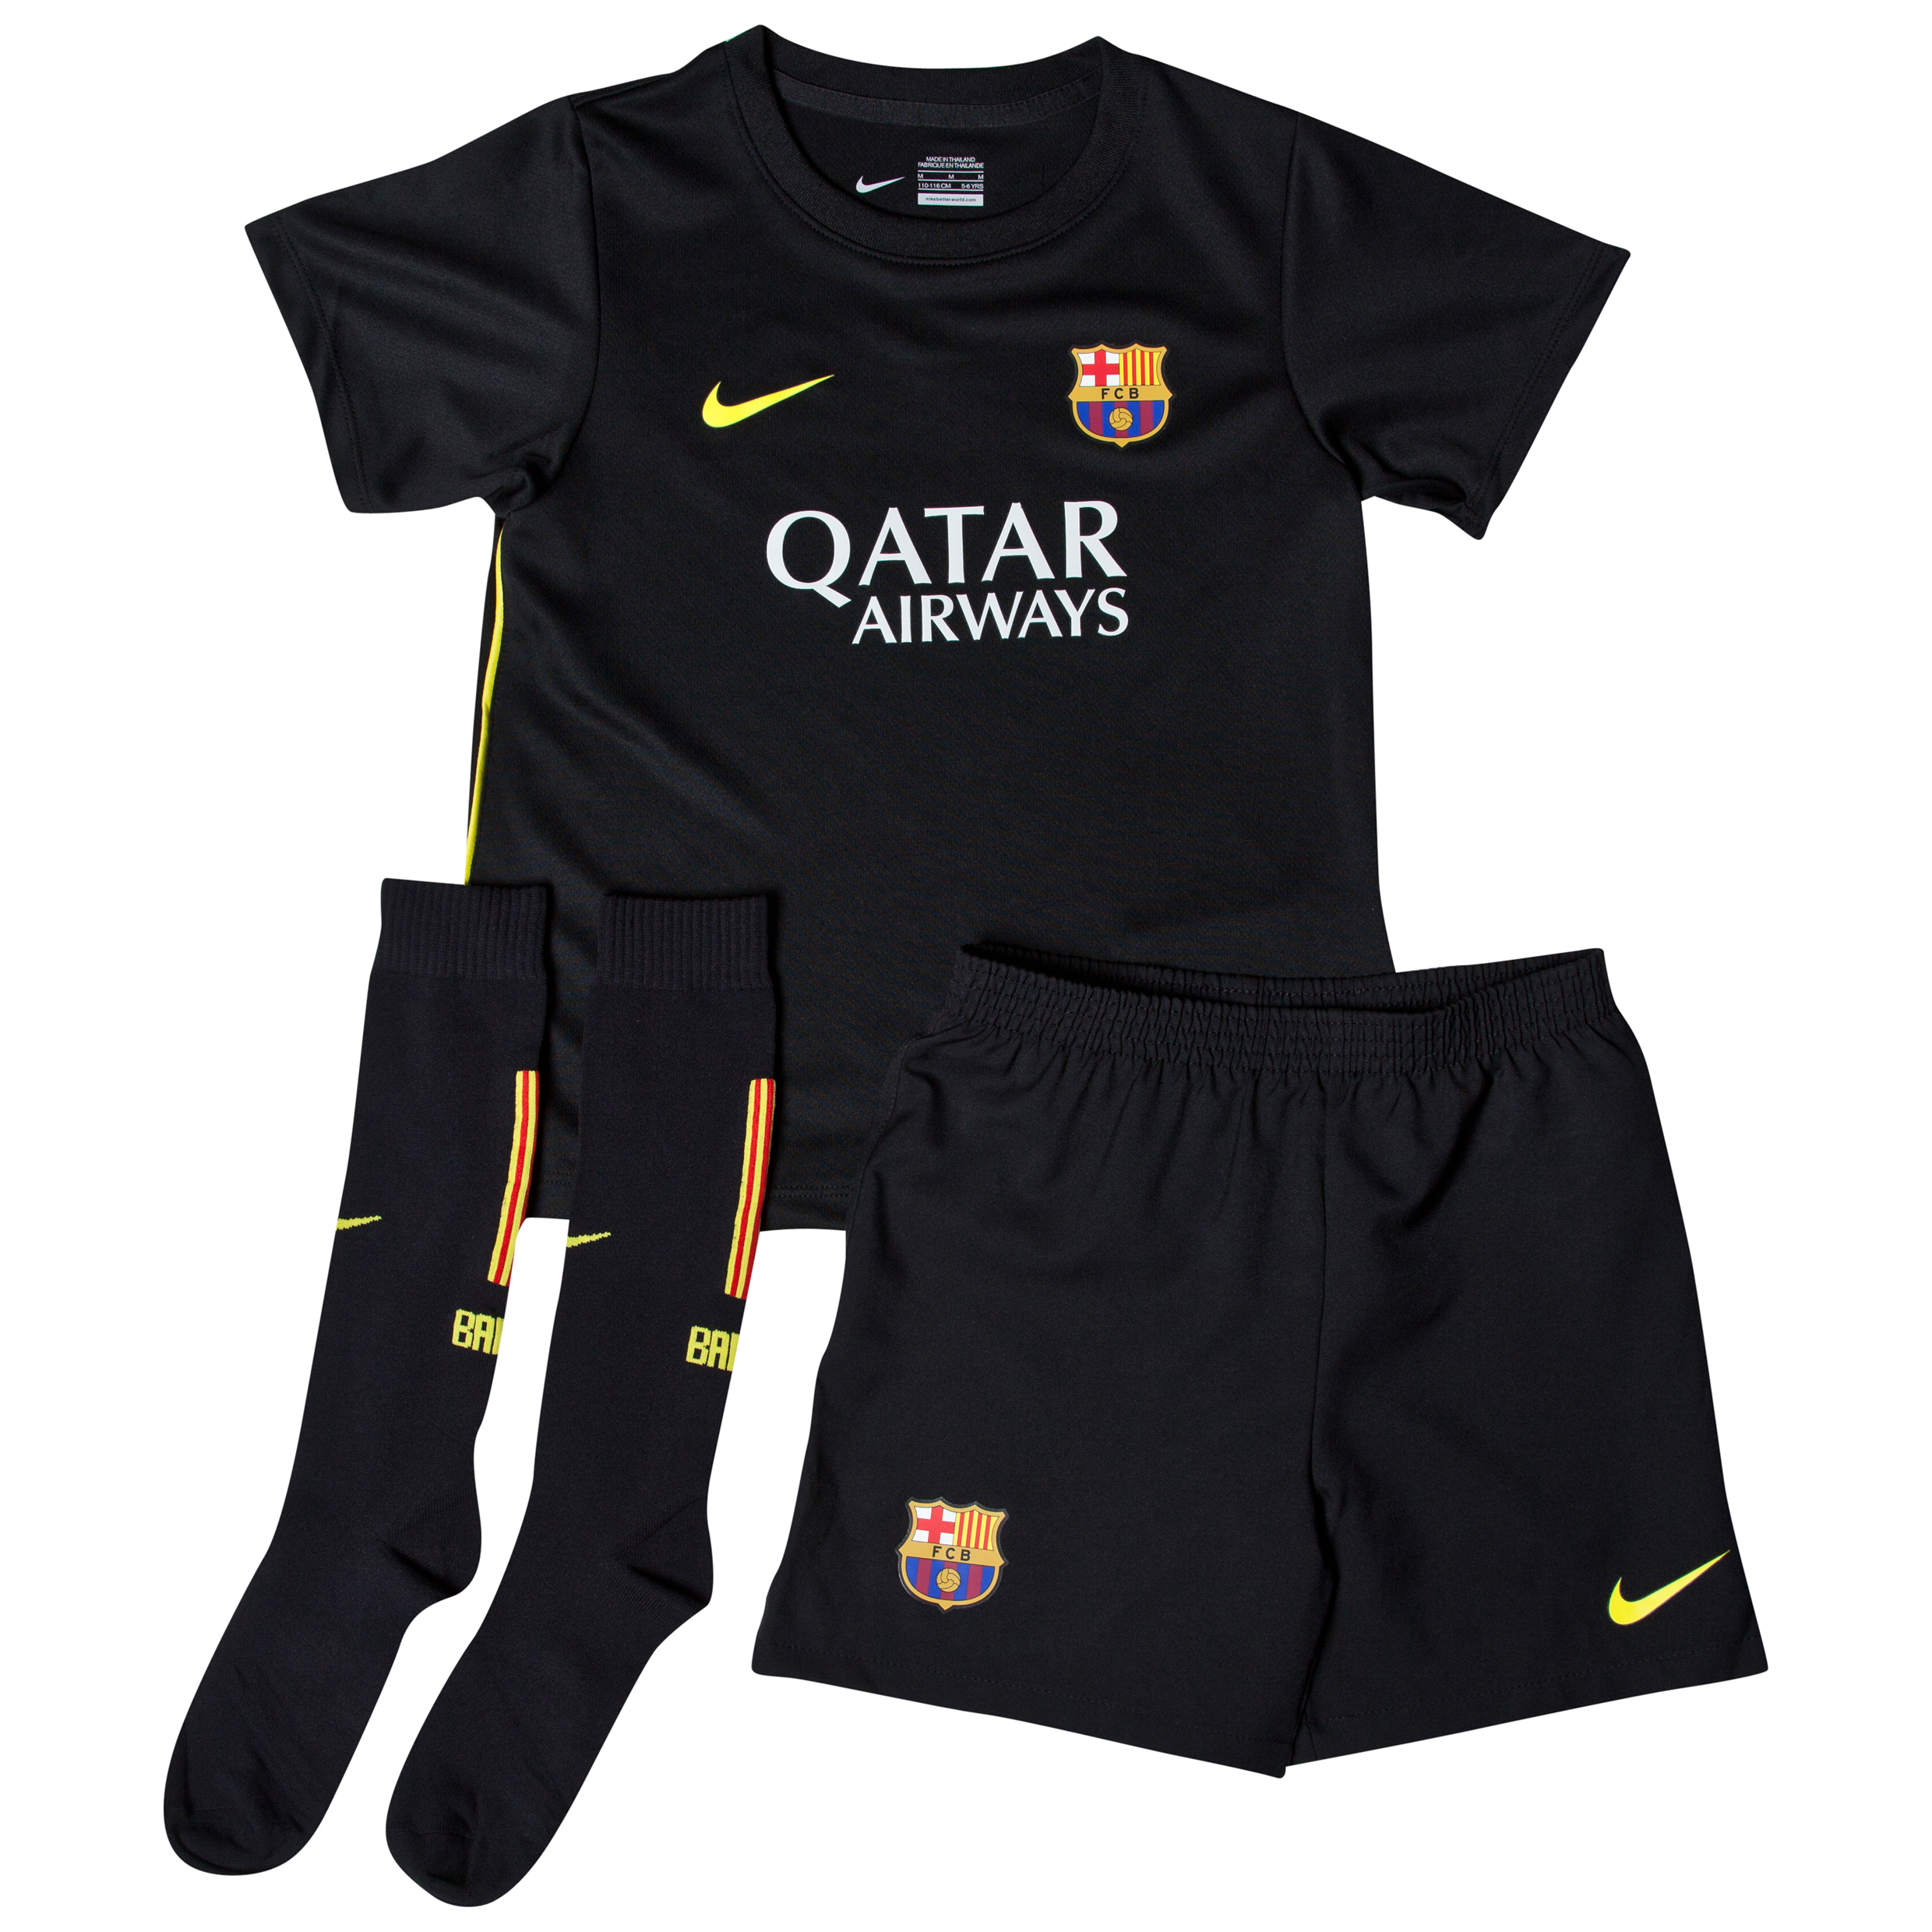 Barcelona Third Kit 2013/14 - Little Boys